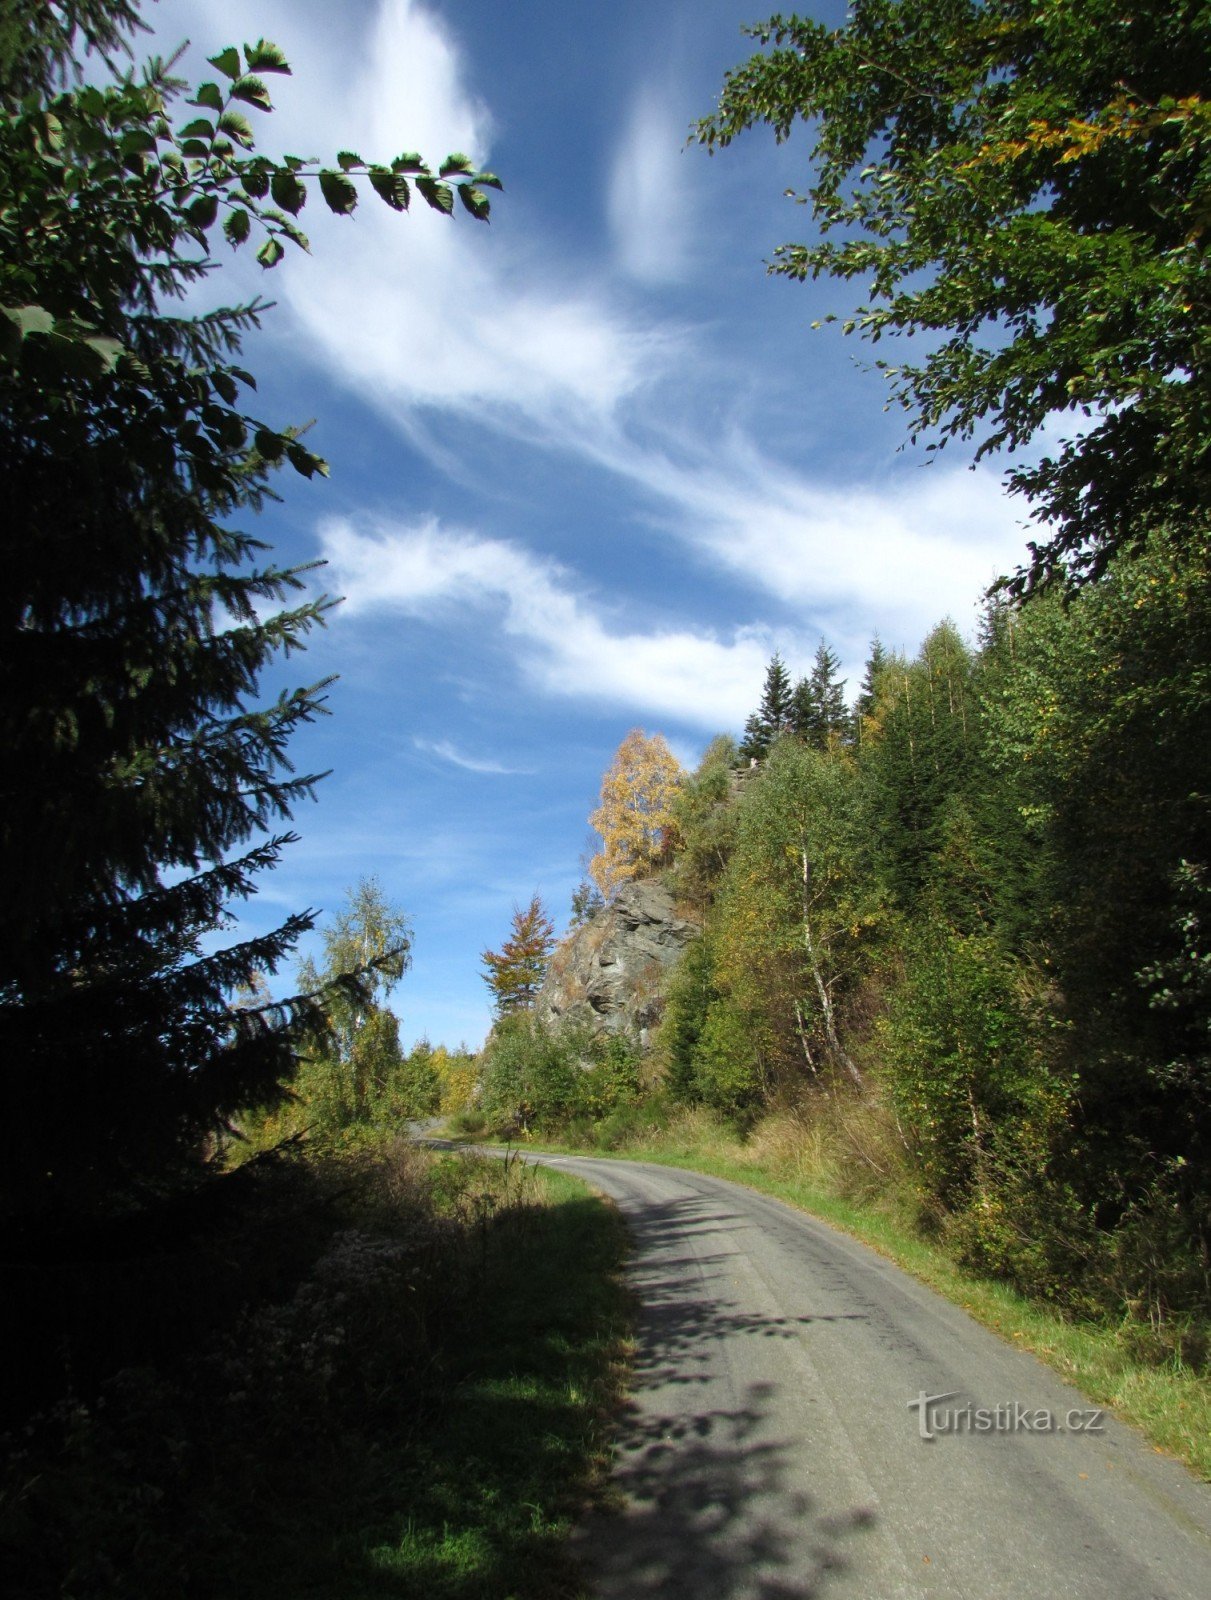 Stânca Kamzičí deasupra văii Bílé potok - Munții Jeseníky